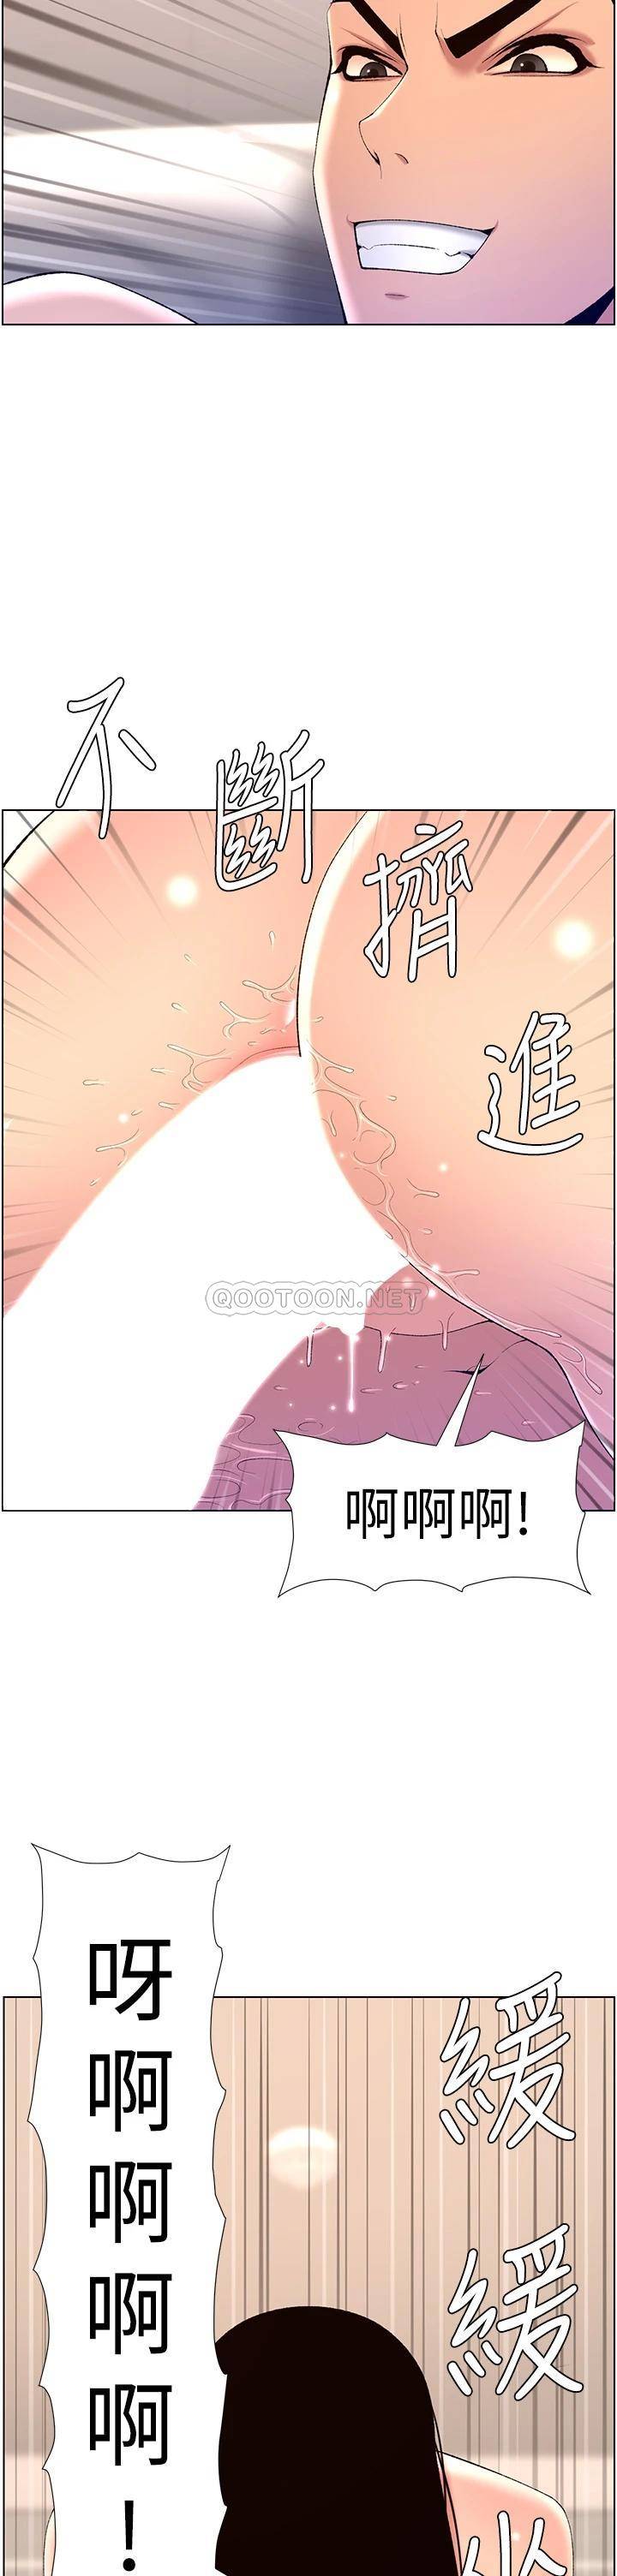 韩国污漫画 帝王App 第29话 棒棒太大塞不进来! 33